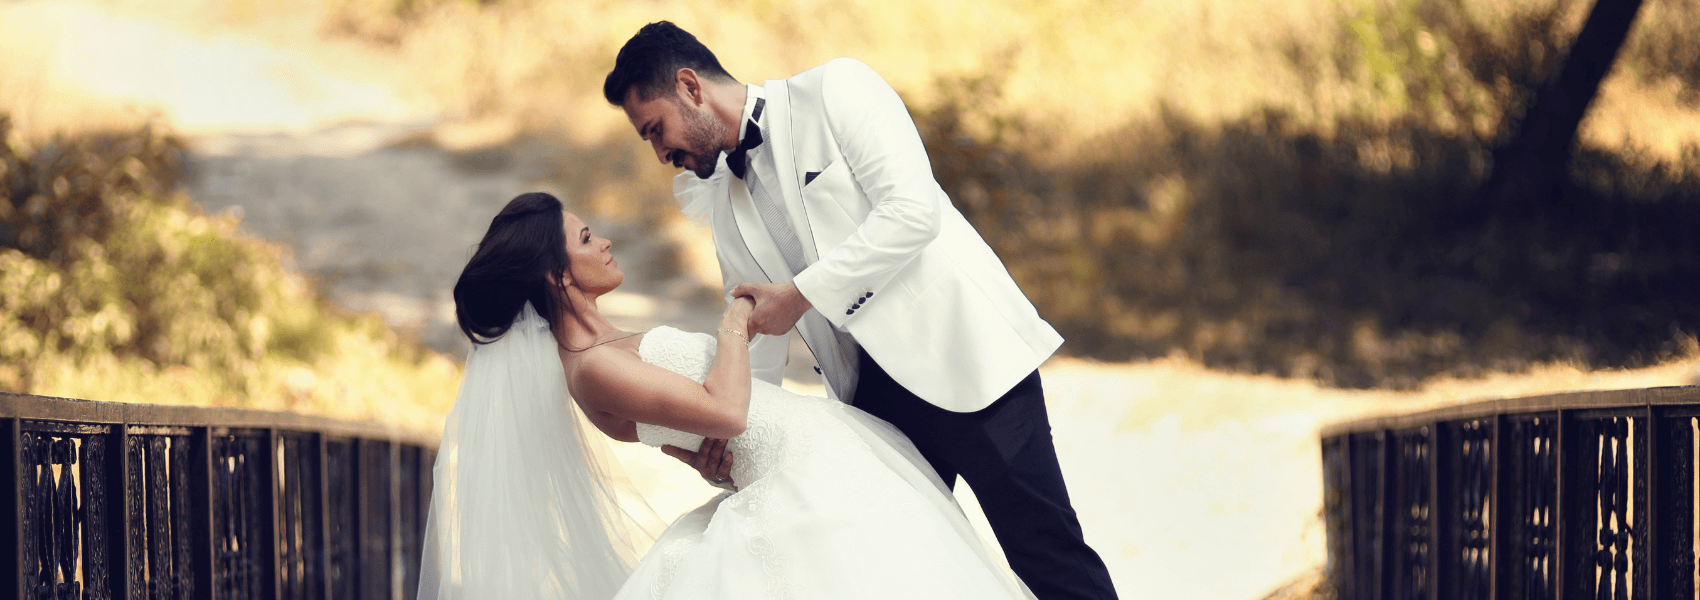 Bryllup 2020: Alt hvad du skal huske til dit drømmebryllup